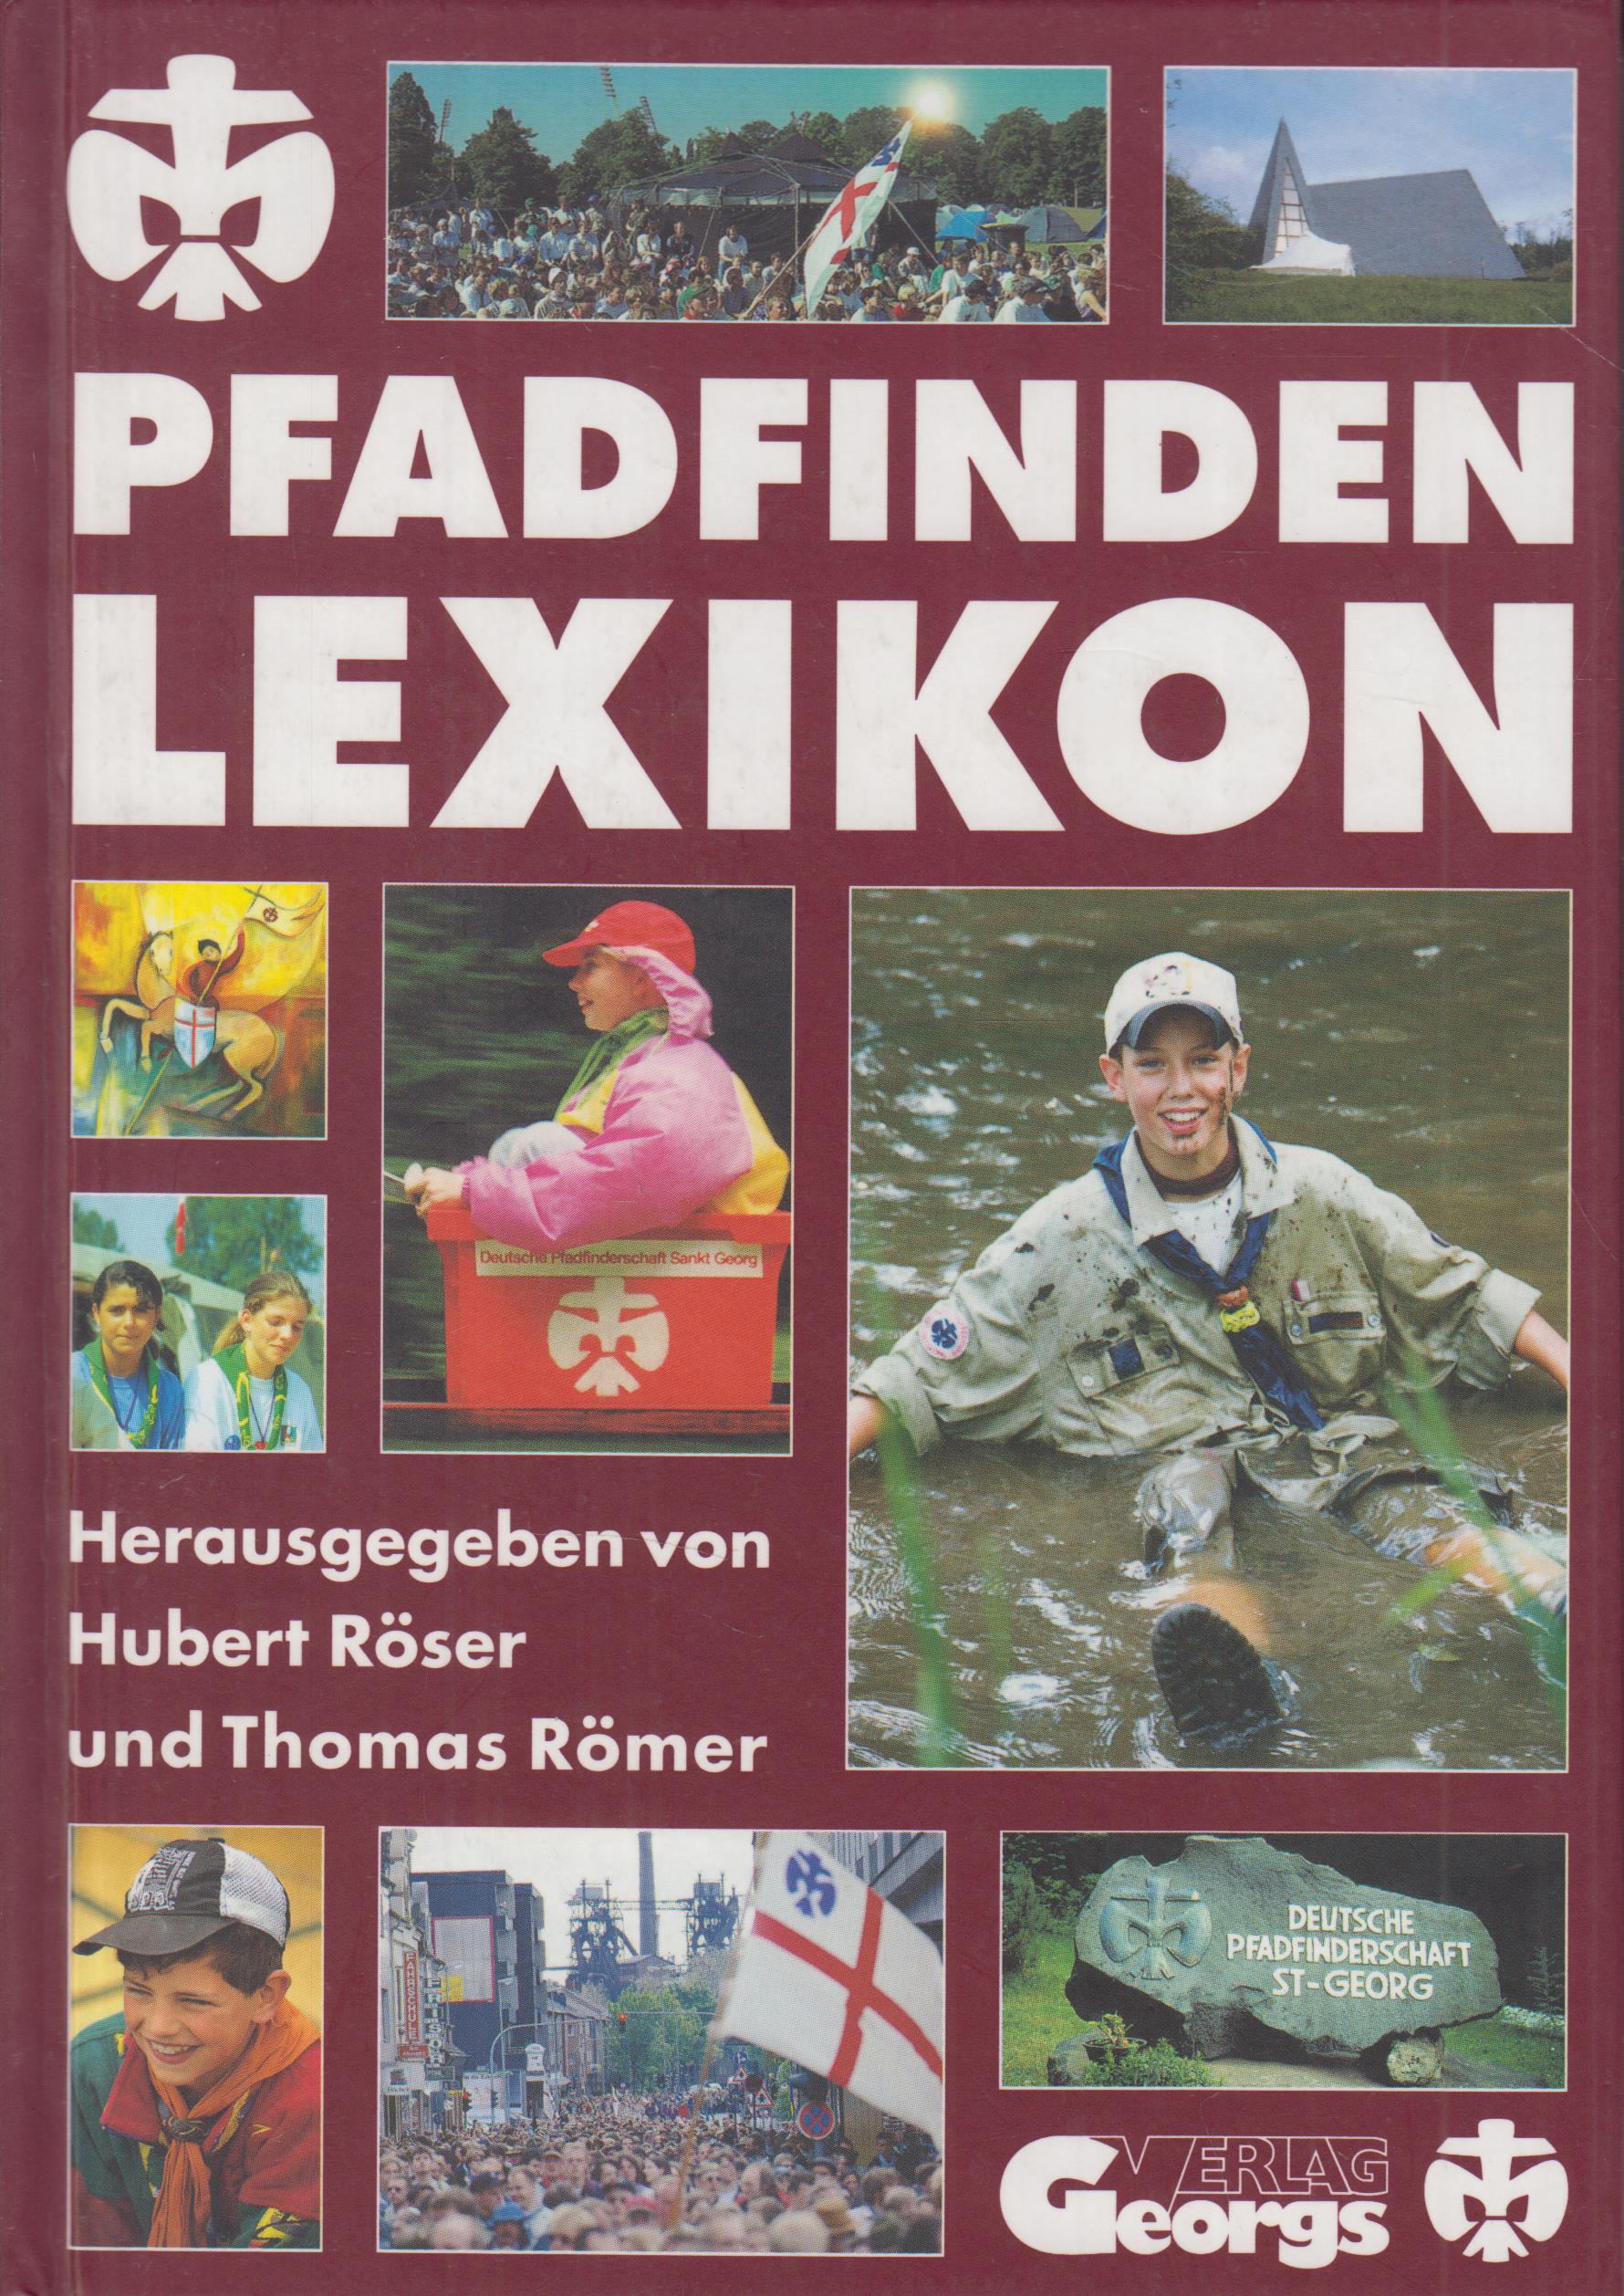 Pfadfinden Lexikon - Röser, Hubert und Thomas Römer (Hrsg.)